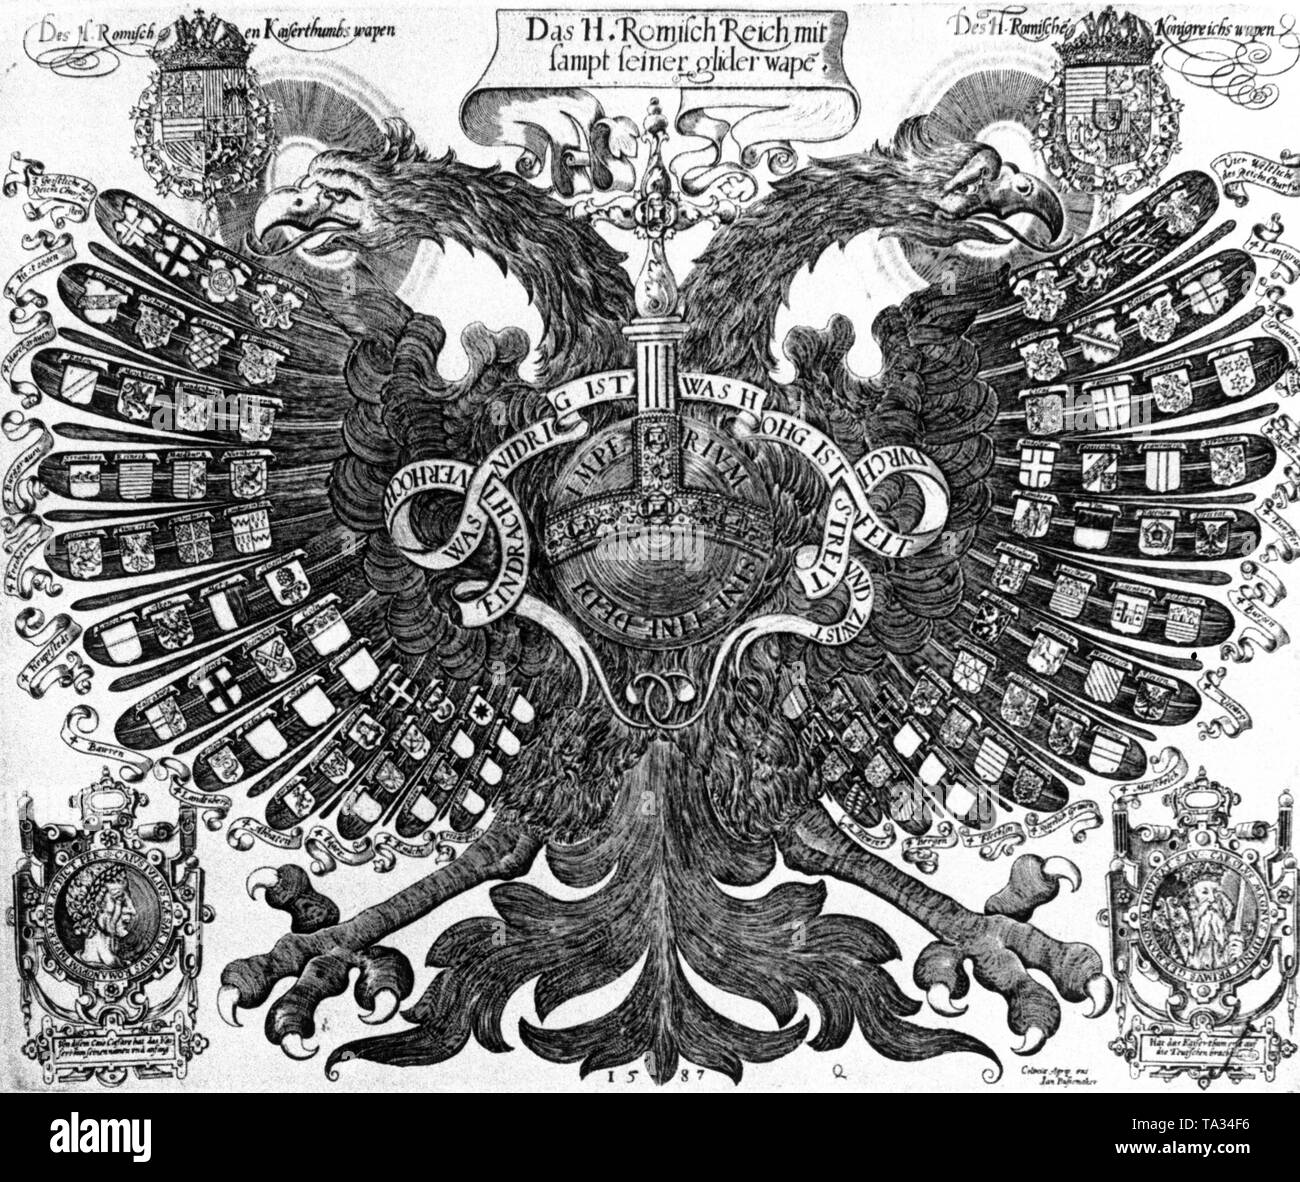 Rappresentazione di una doppia Reichsadler (Imperial Eagle) come aquila di quaternione dopo una incisione su rame di Johann Bussemacher da Colonia. Questo è un ideale-rappresentazione tipica dell'impero nel suo stemma, una doppia, haloed eagle (dotato di un alone), che protegge le tenute dell'Impero sotto la sua ala. Il motivo è simmetrica, gli stemmi di Imperatore Tedesco e re Rodolfo II (1552-1612) sono raffigurati al suo piume sulla destra e sulla sinistra dell'haloed teste. L'imperatore della stemma sulla sinistra conduce la Castiglia, Aragona, Sicilia, Austria e la Borgogna in Foto Stock